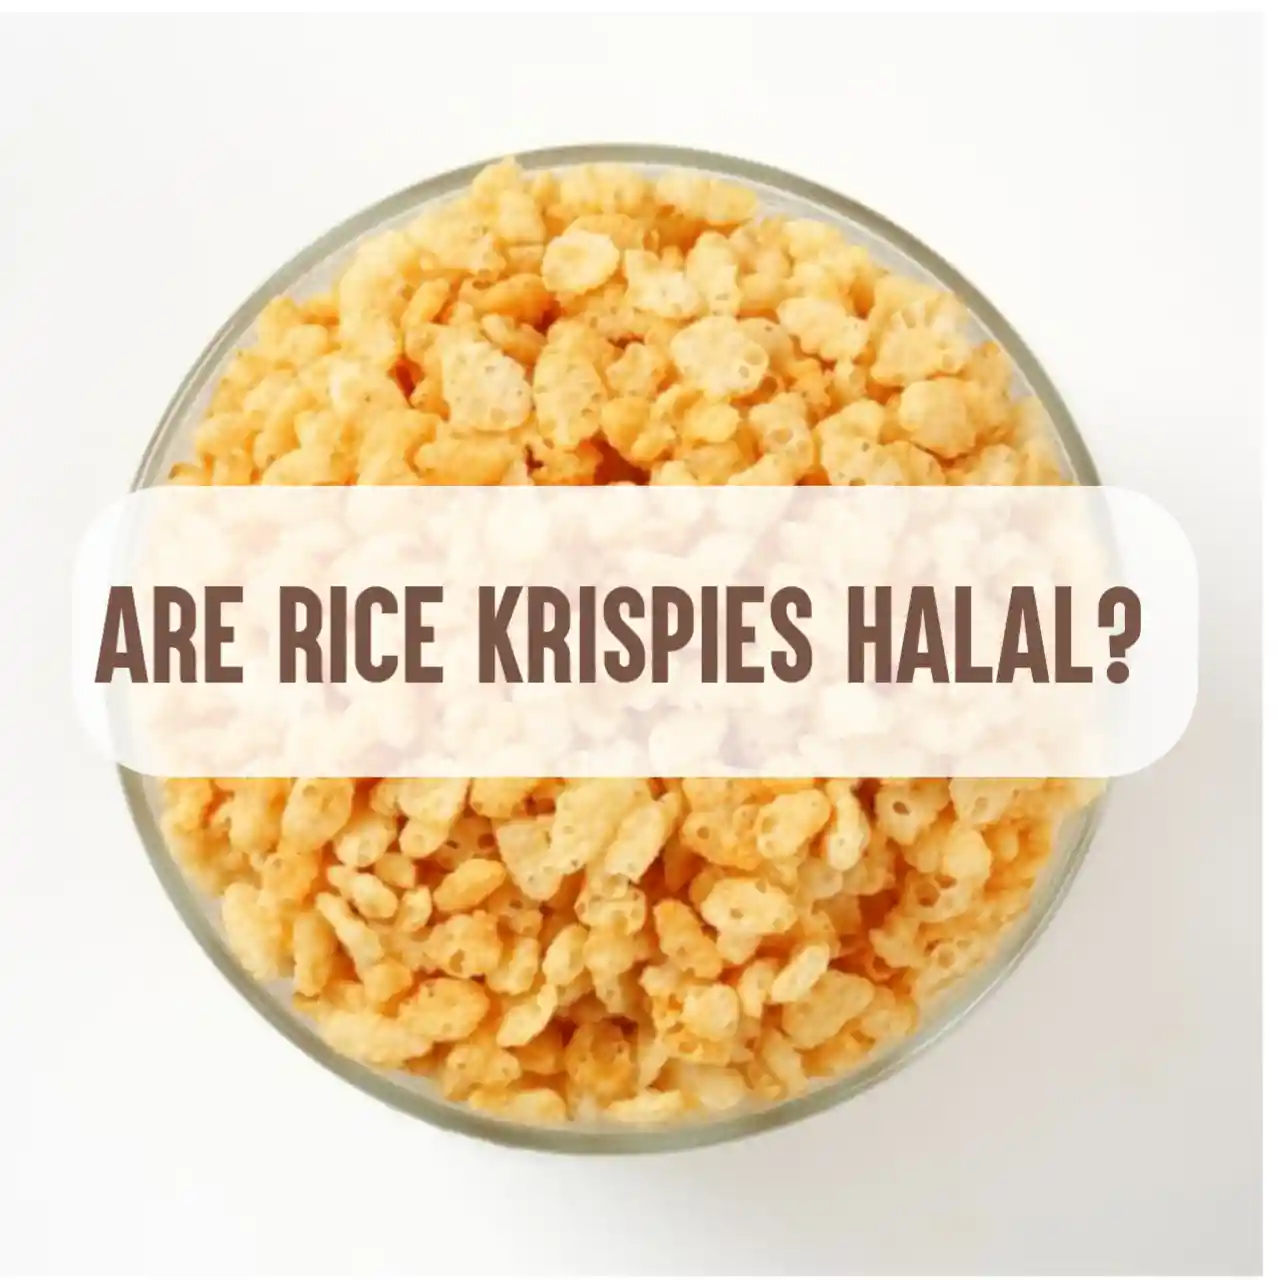 Are Rice Krispies Hala